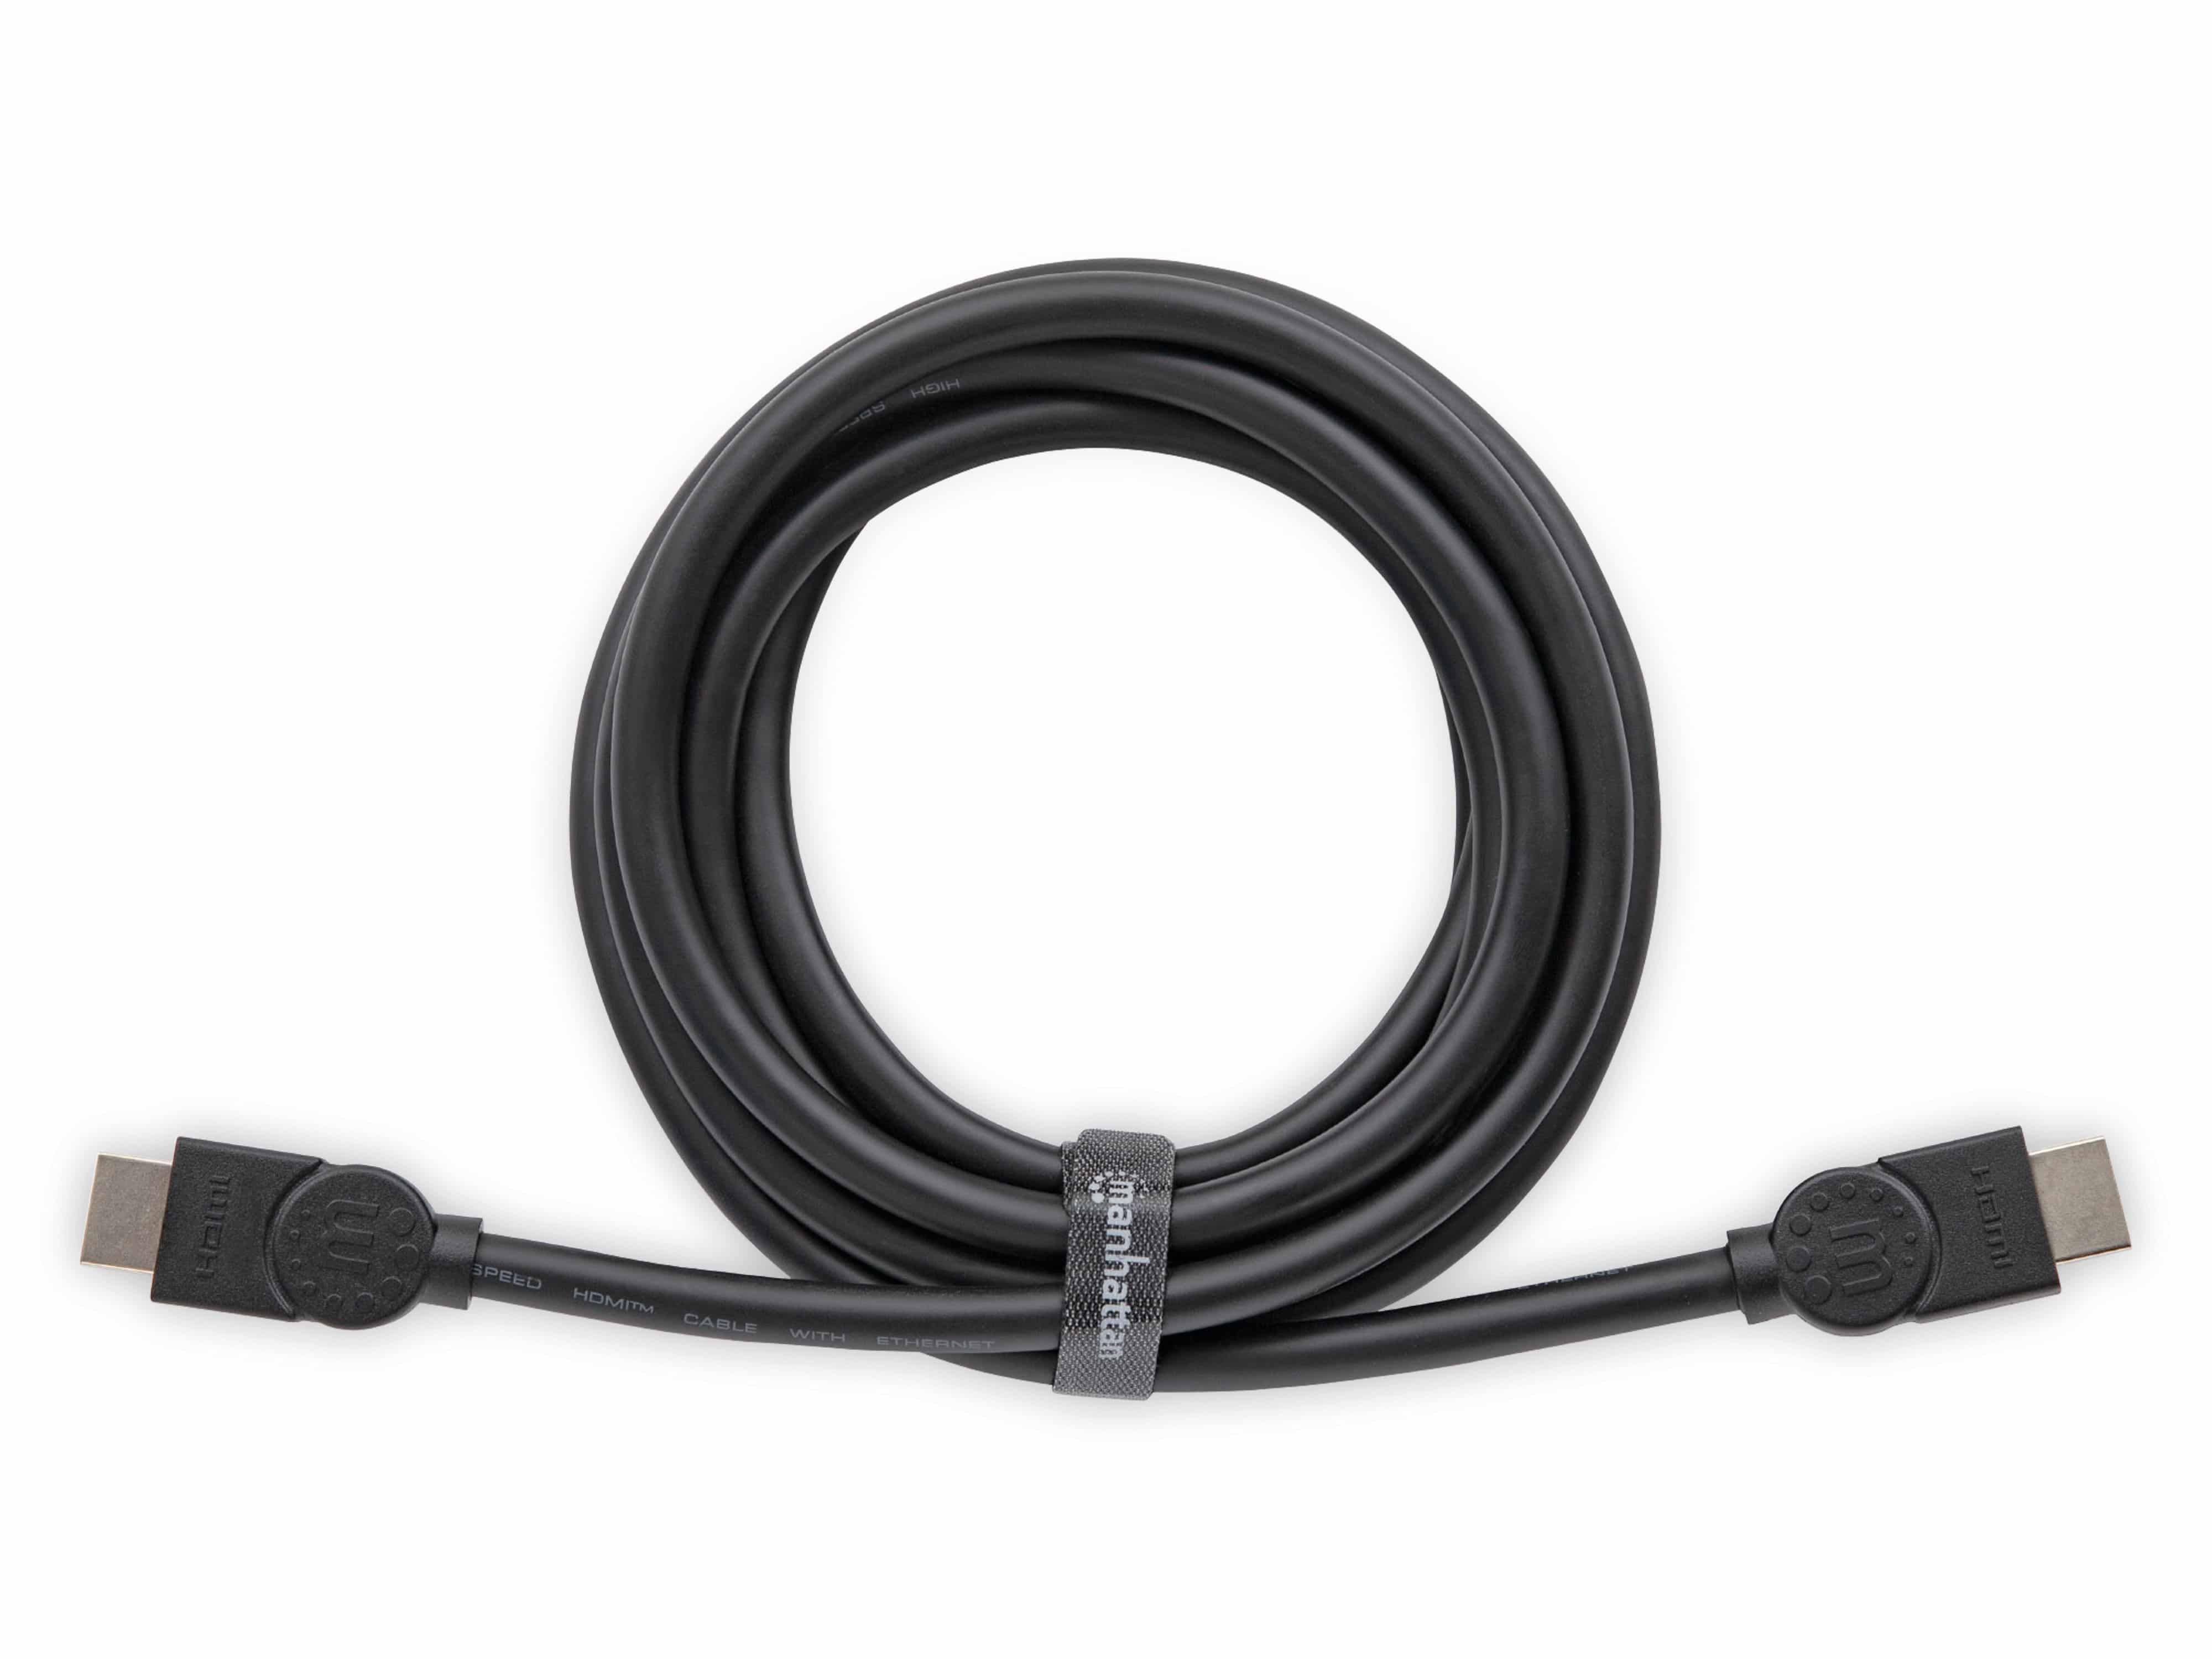 MANHATTAN Premium HDMI-Kabel, 3 m, schwarz